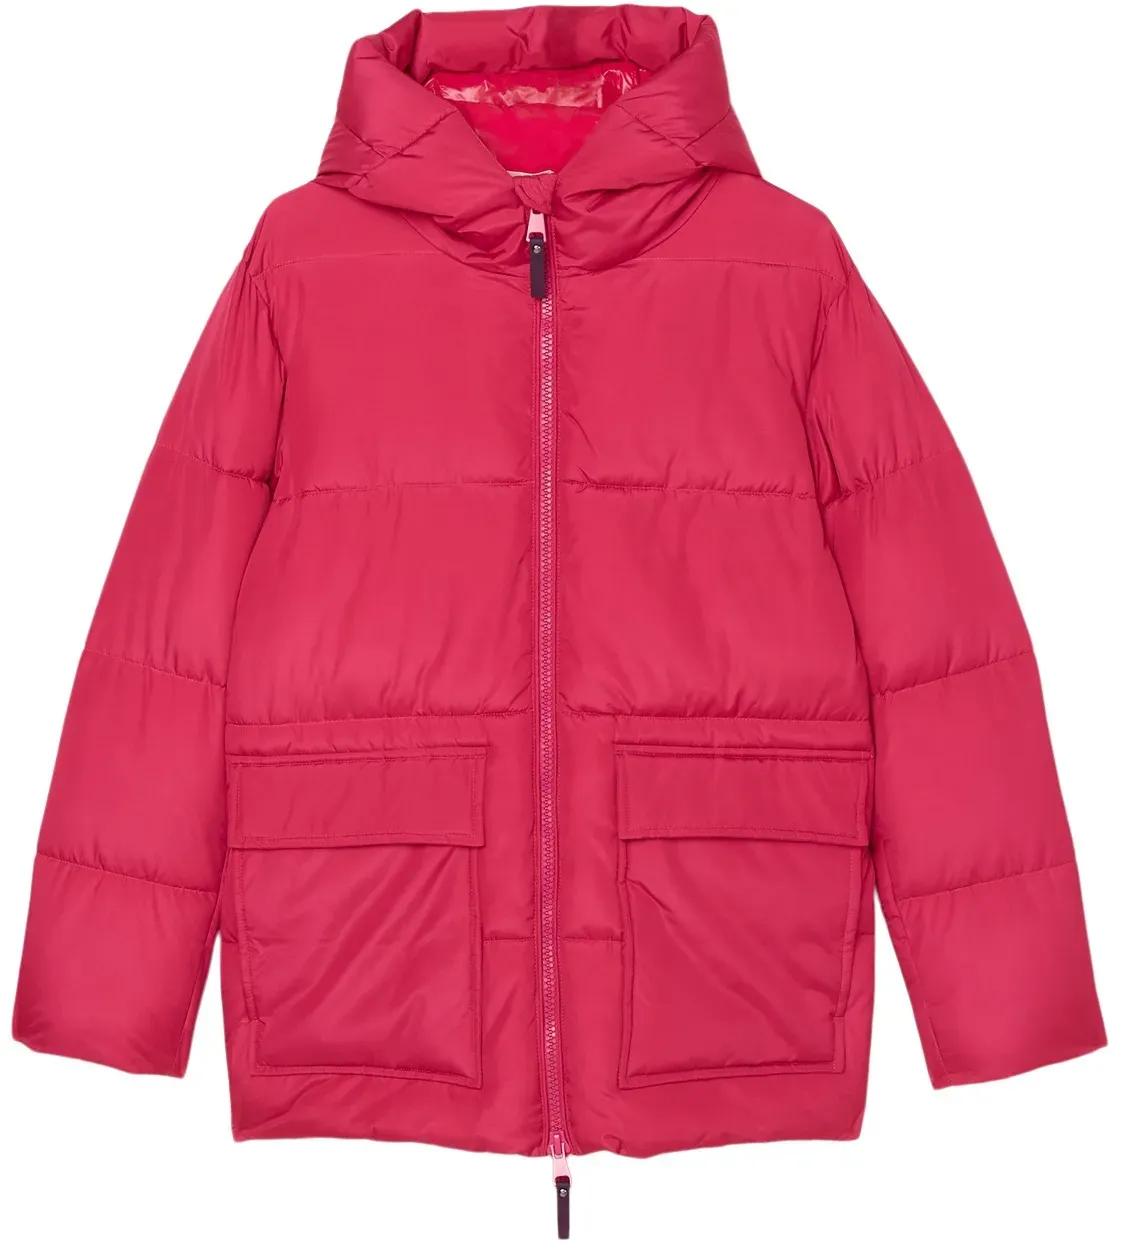 Outdoorjacke MARC O'POLO "mit wasserabweisender Oberfläche" Gr. 176, pink Mädchen Jacken Regenjacken